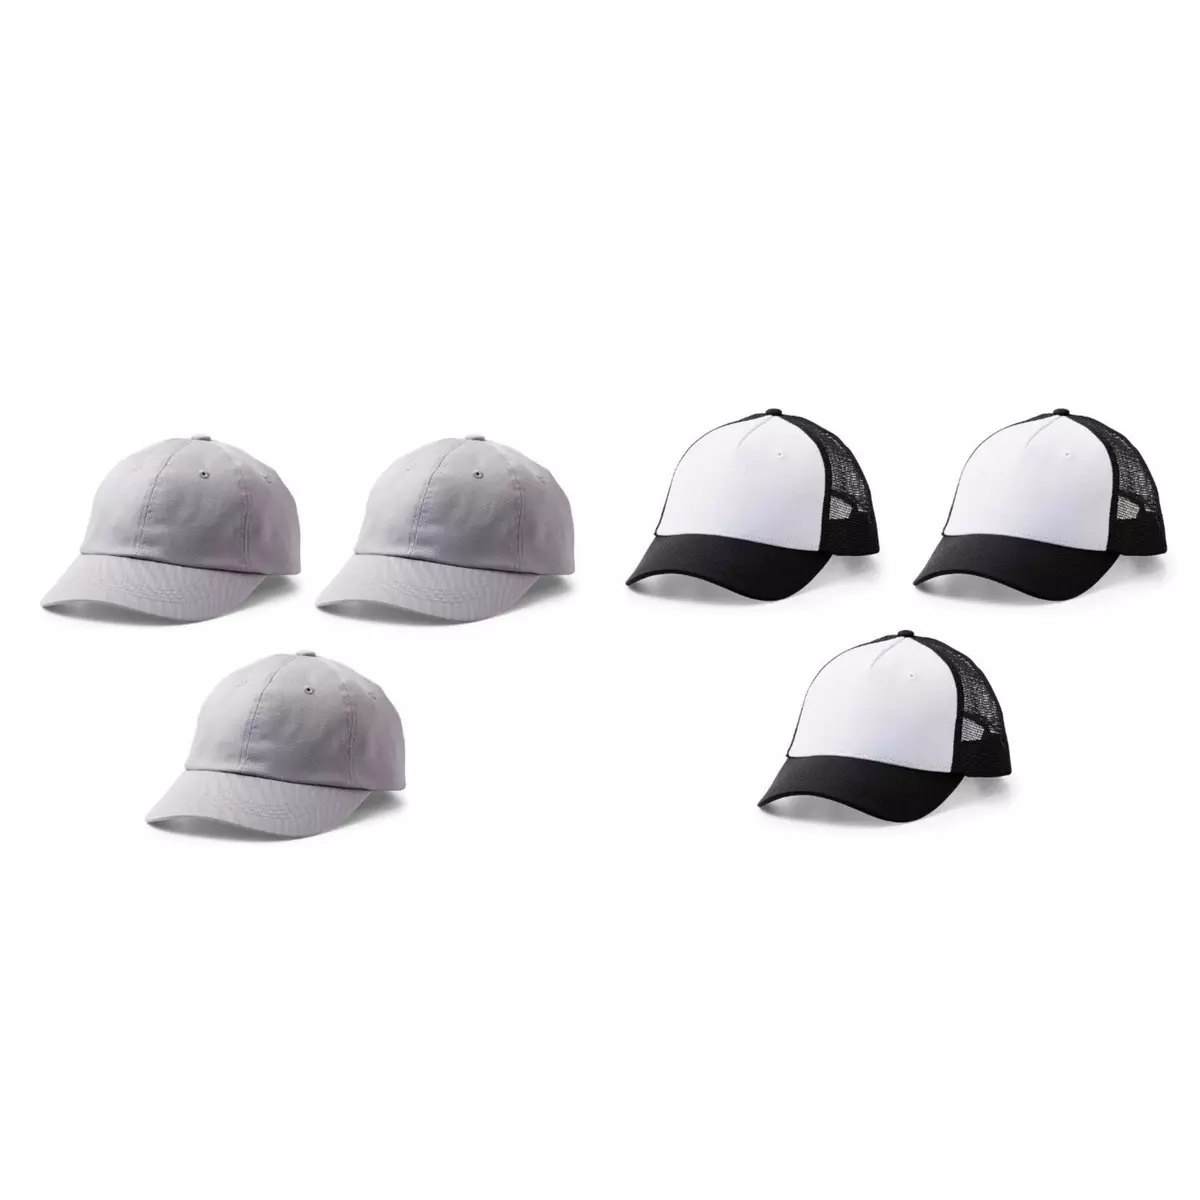 CRICUT 6 casquettes Cricut à personnaliser - Noir/ Blanc + Gris